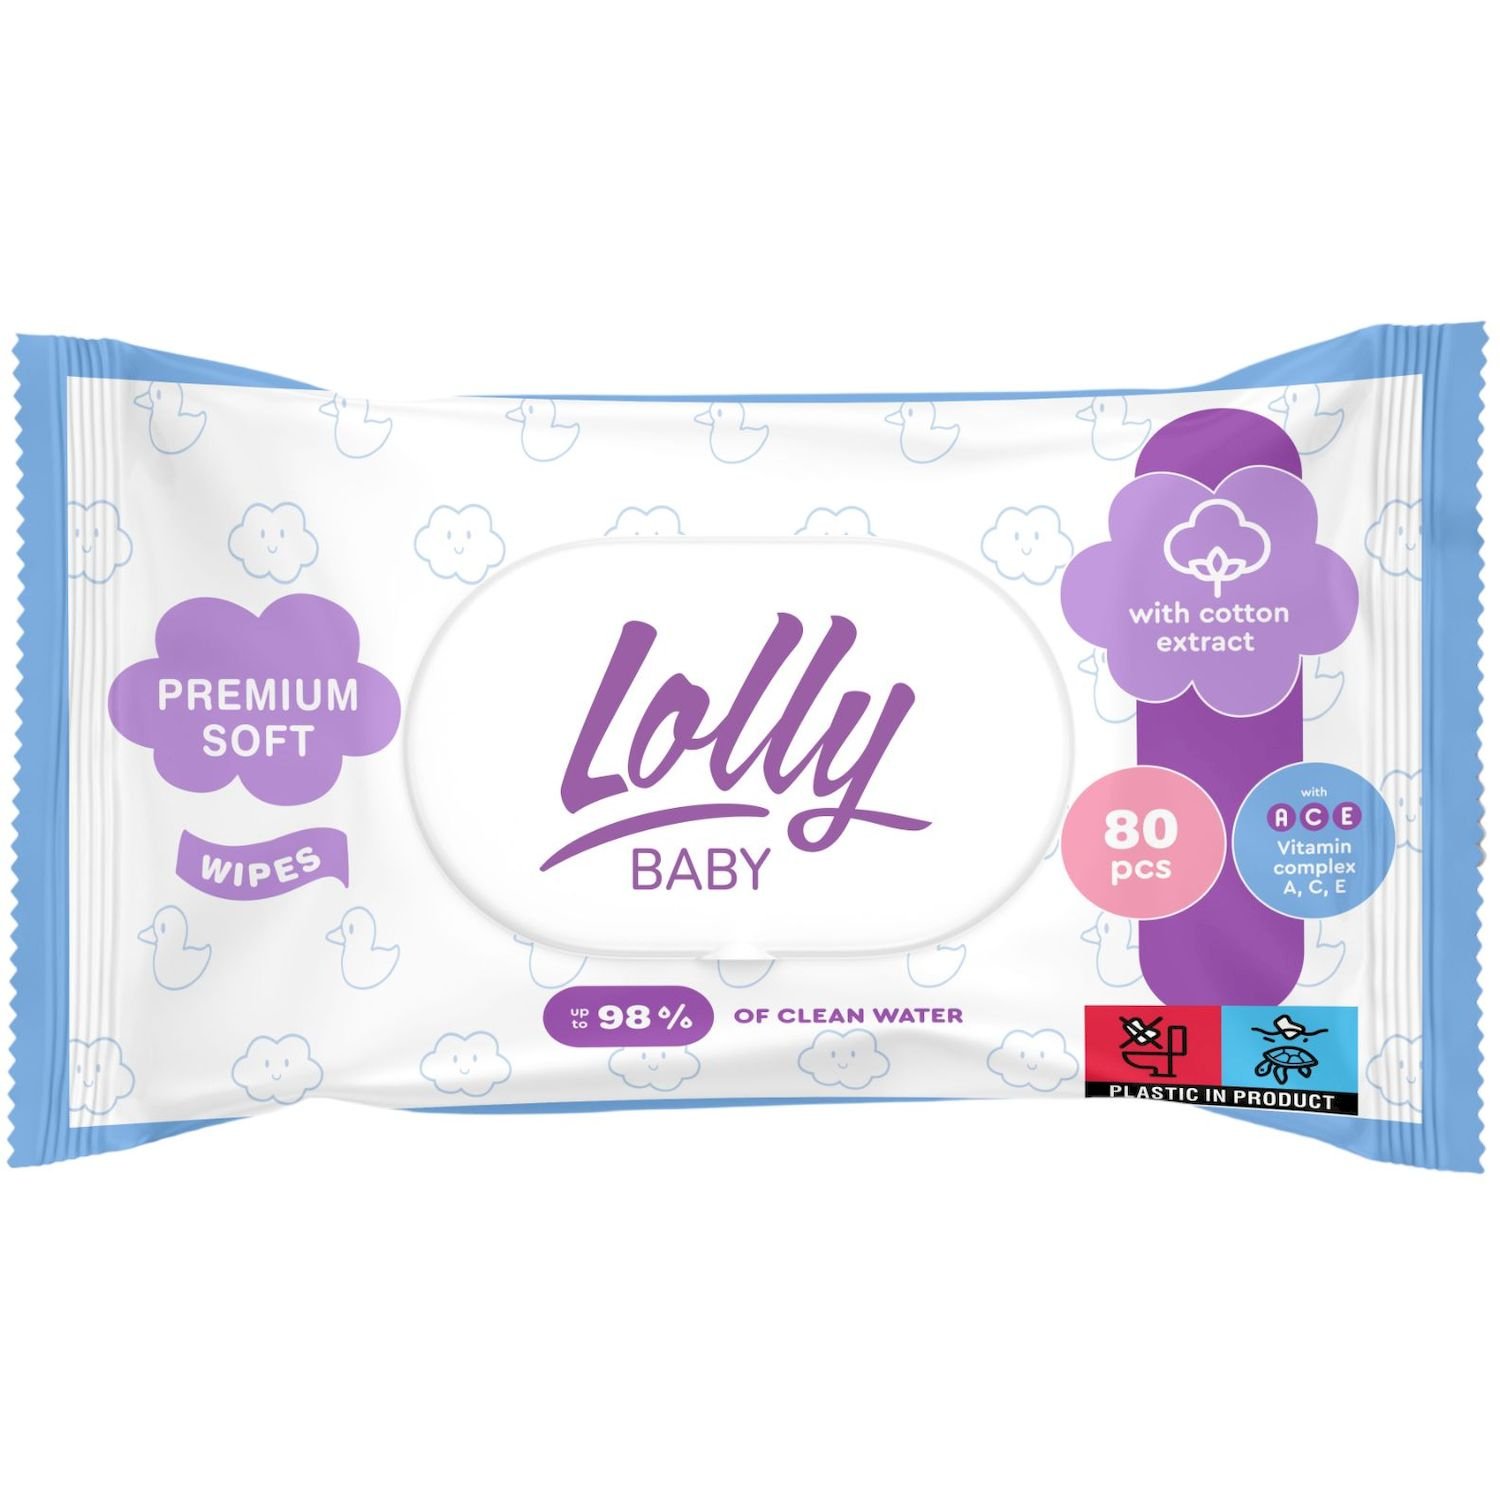 Вологі серветки Lolly Baby Premium Soft, з клапаном, 80 шт. - фото 1